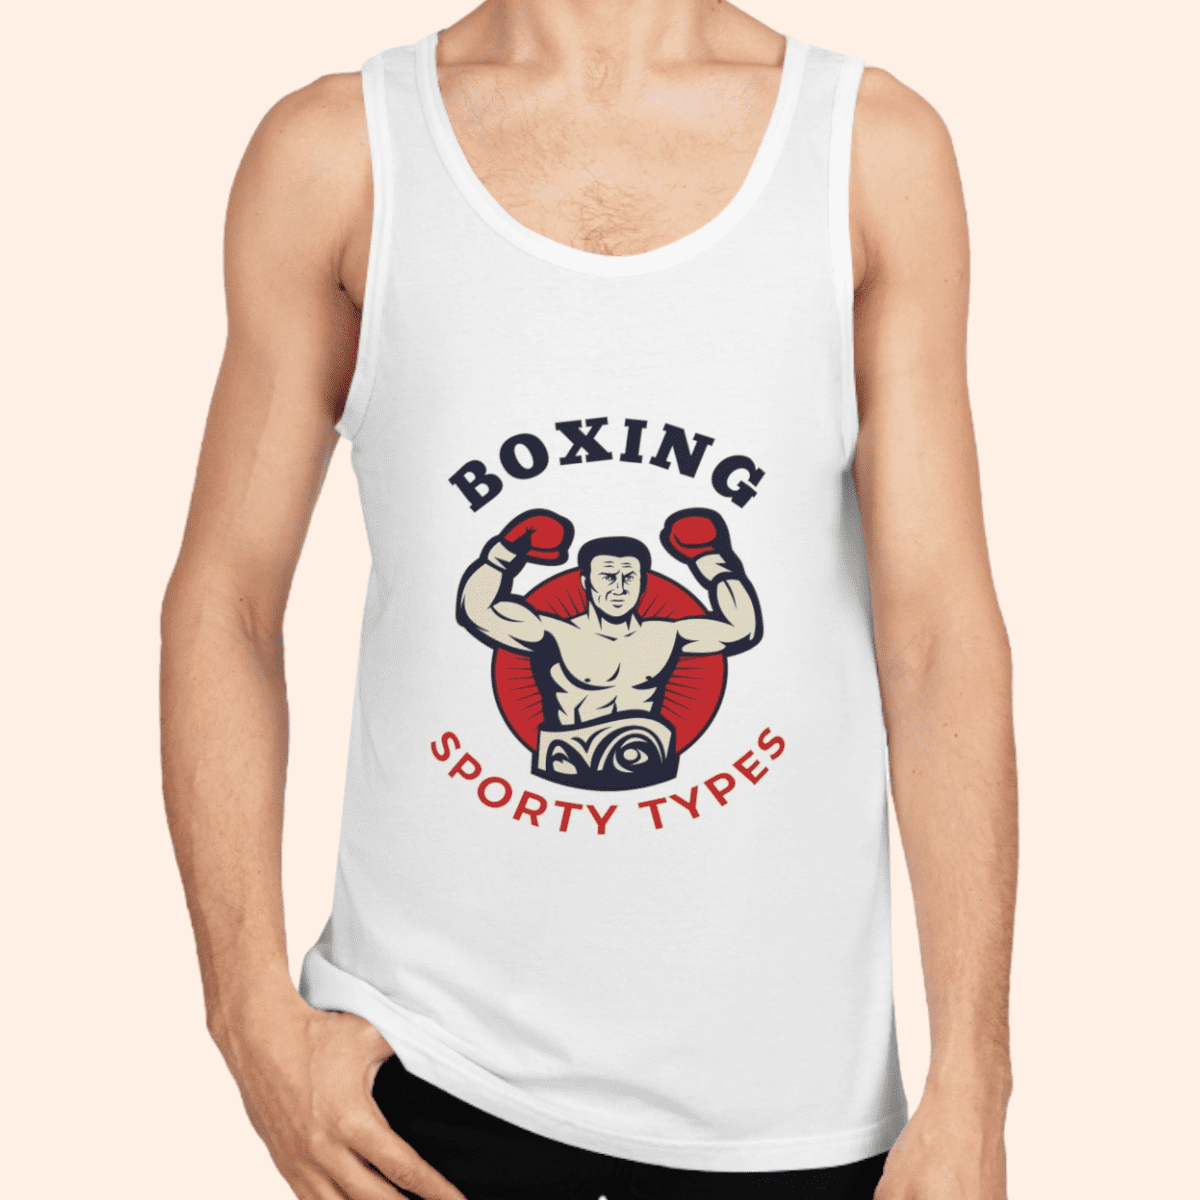 Men's White Boxing Theme Cotton Tank Top